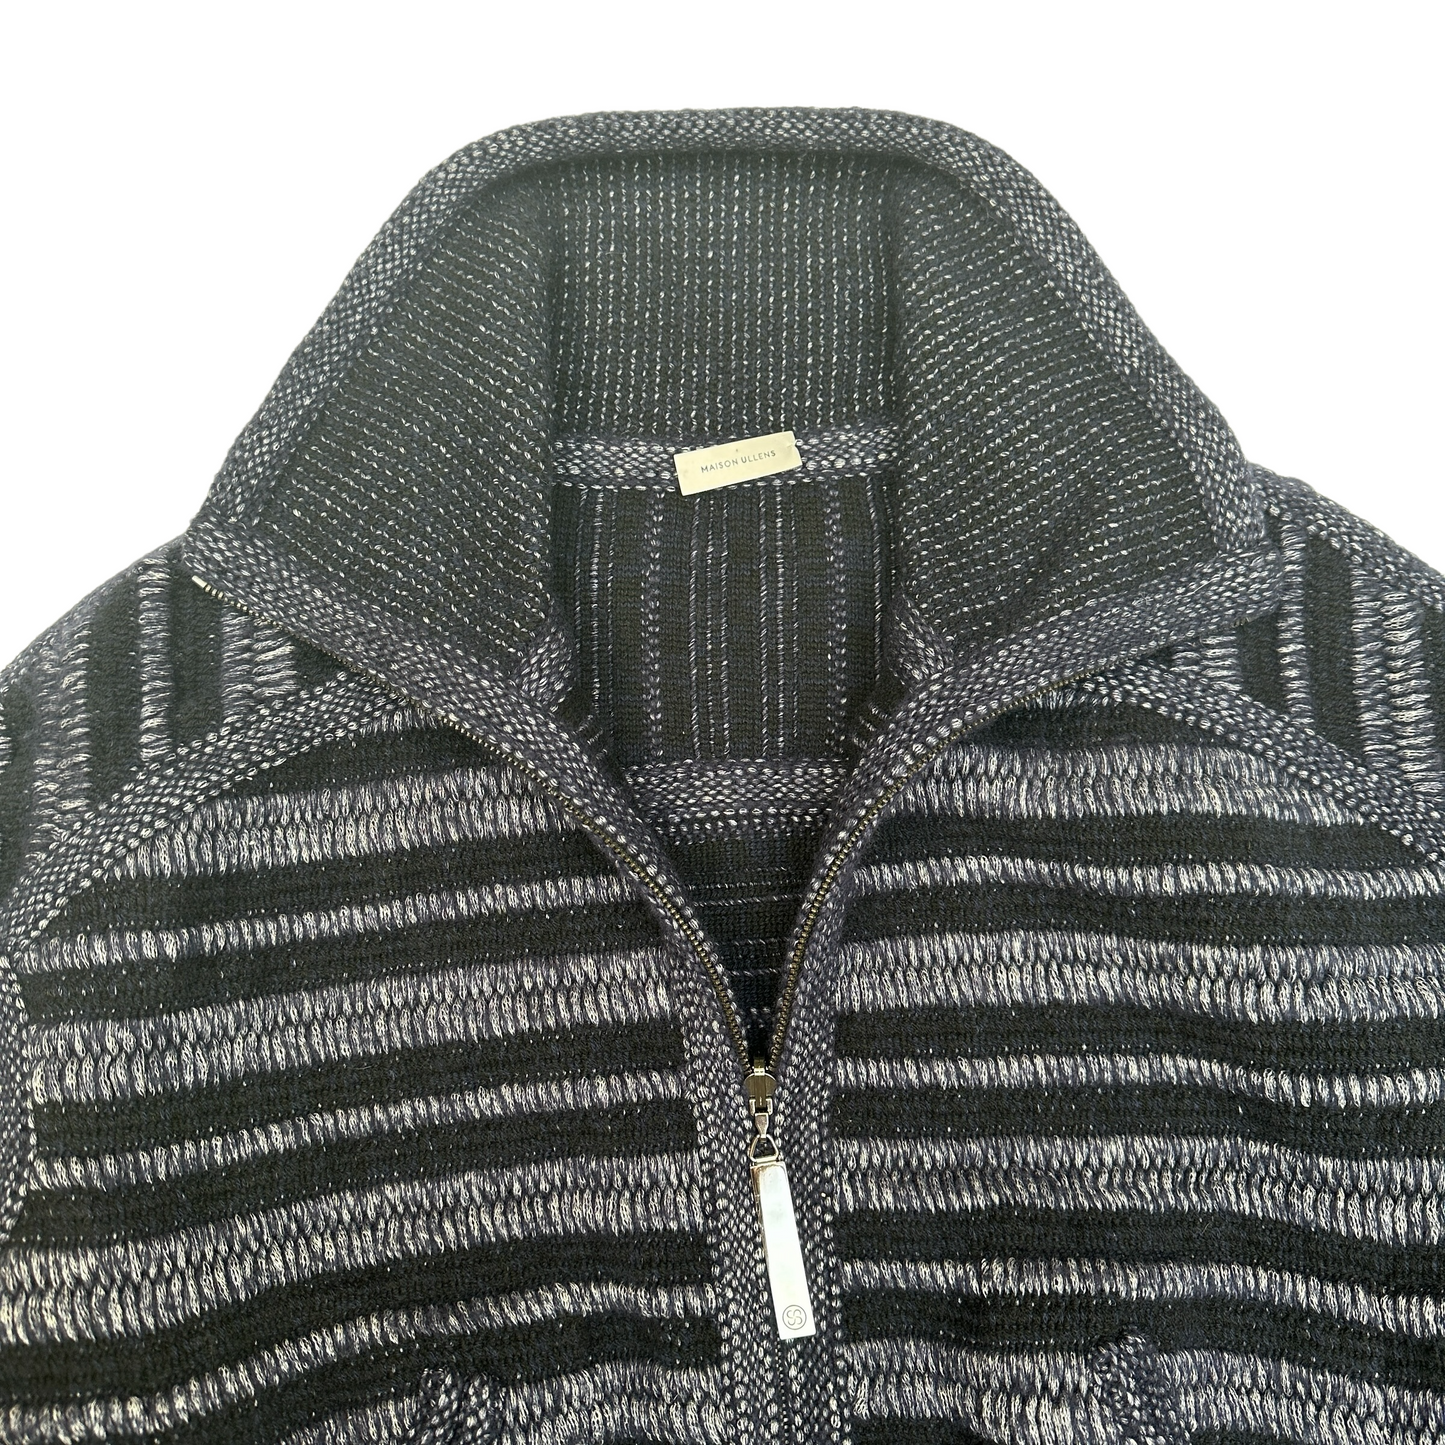 Navy Zipper Sweater - M